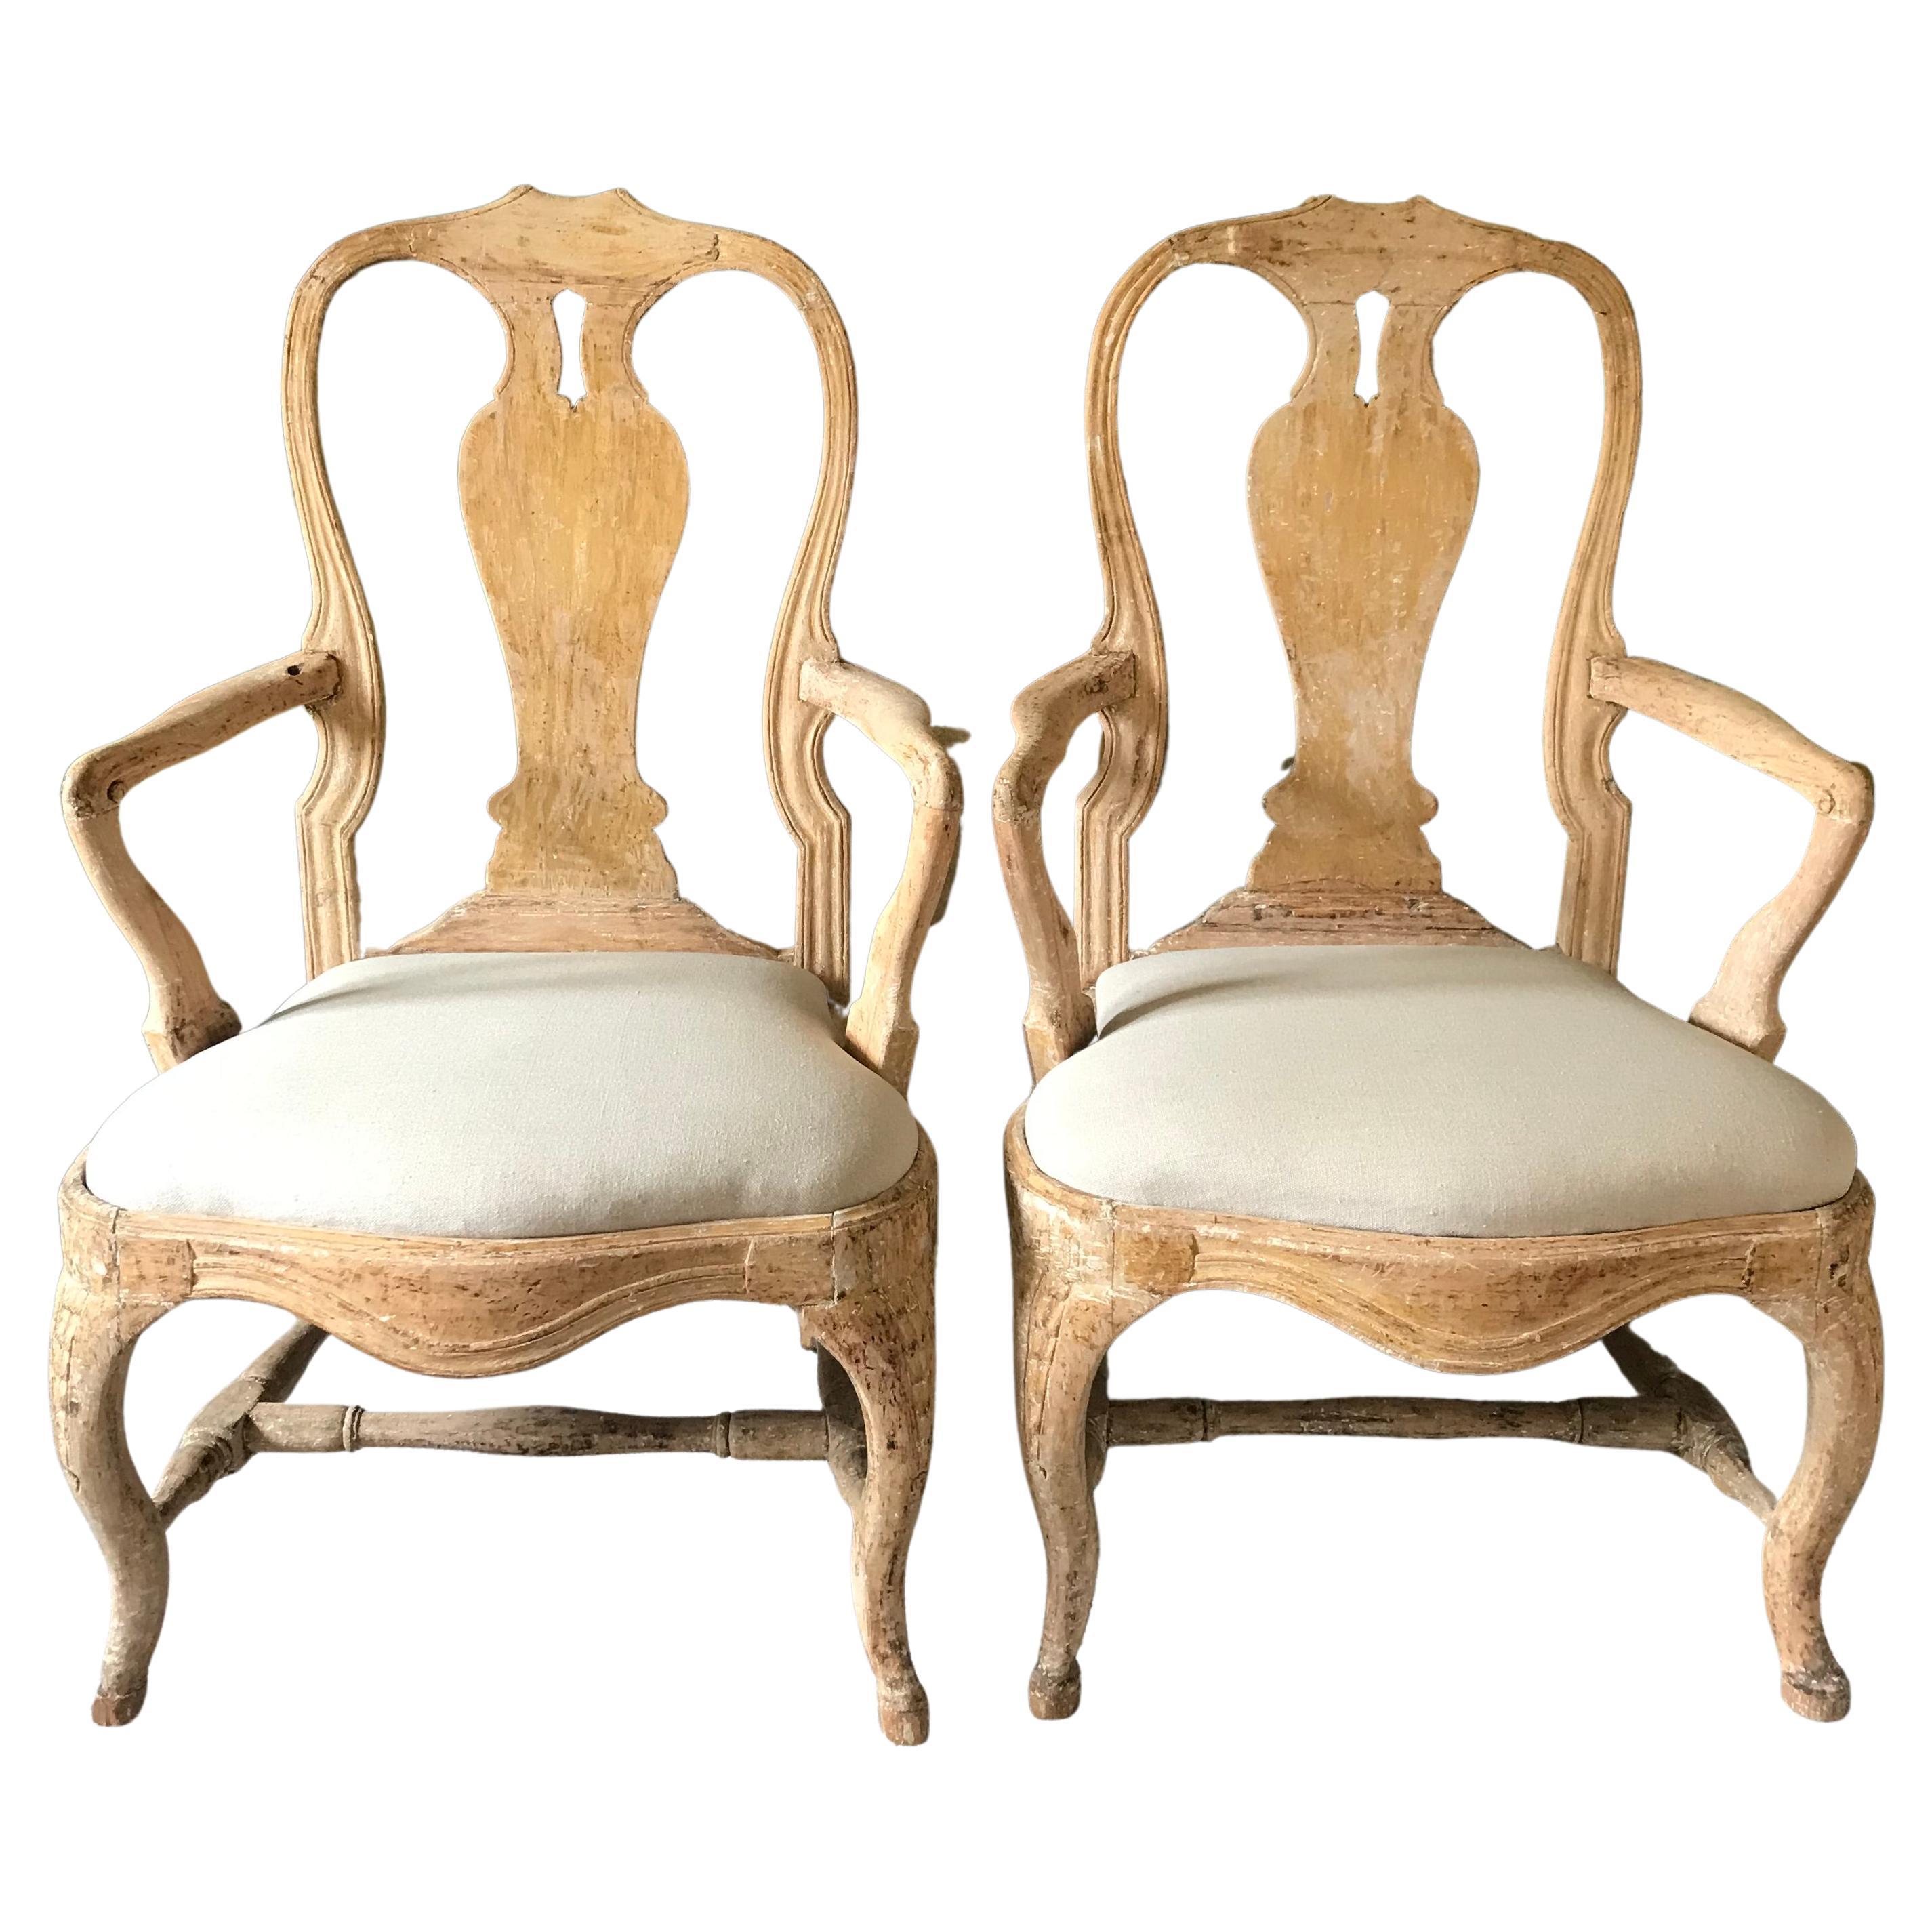 Pair of 18th Century Swedish Chairs